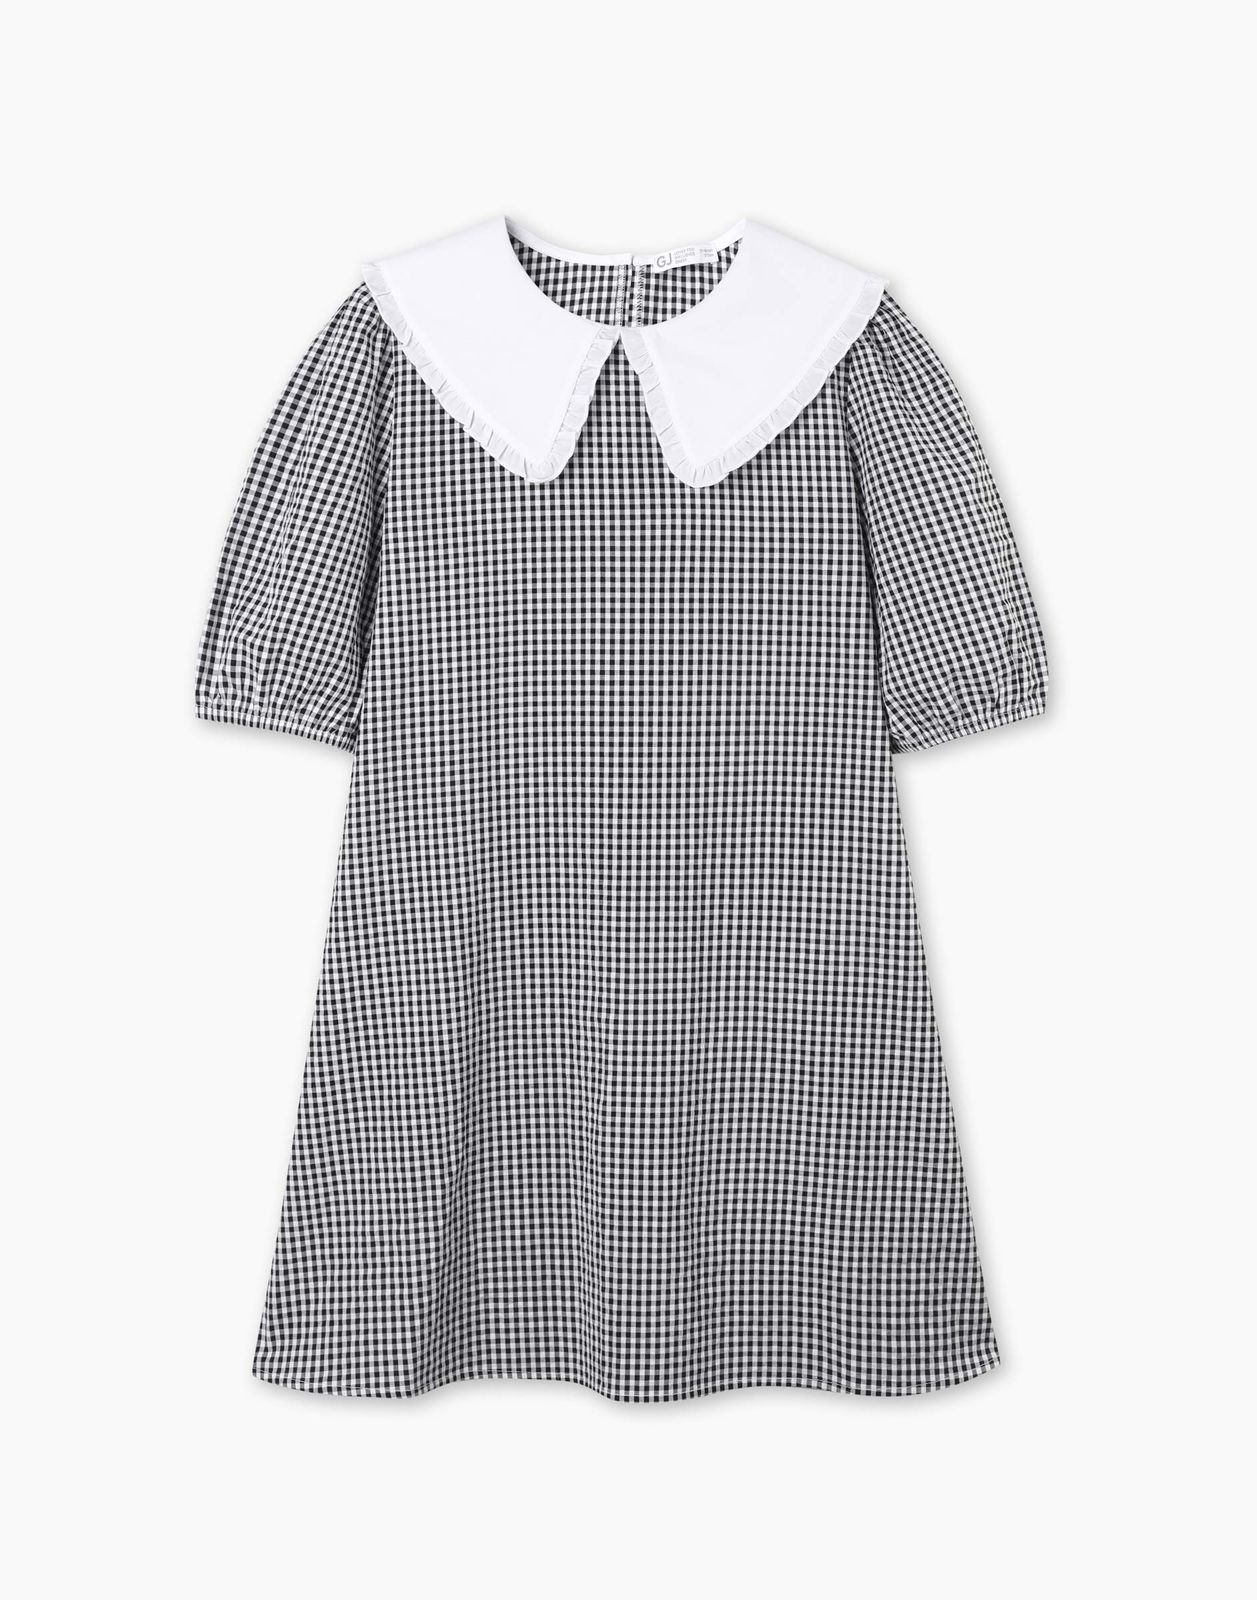 Платье детское Gloria Jeans GDR028214, белый/черный, 128